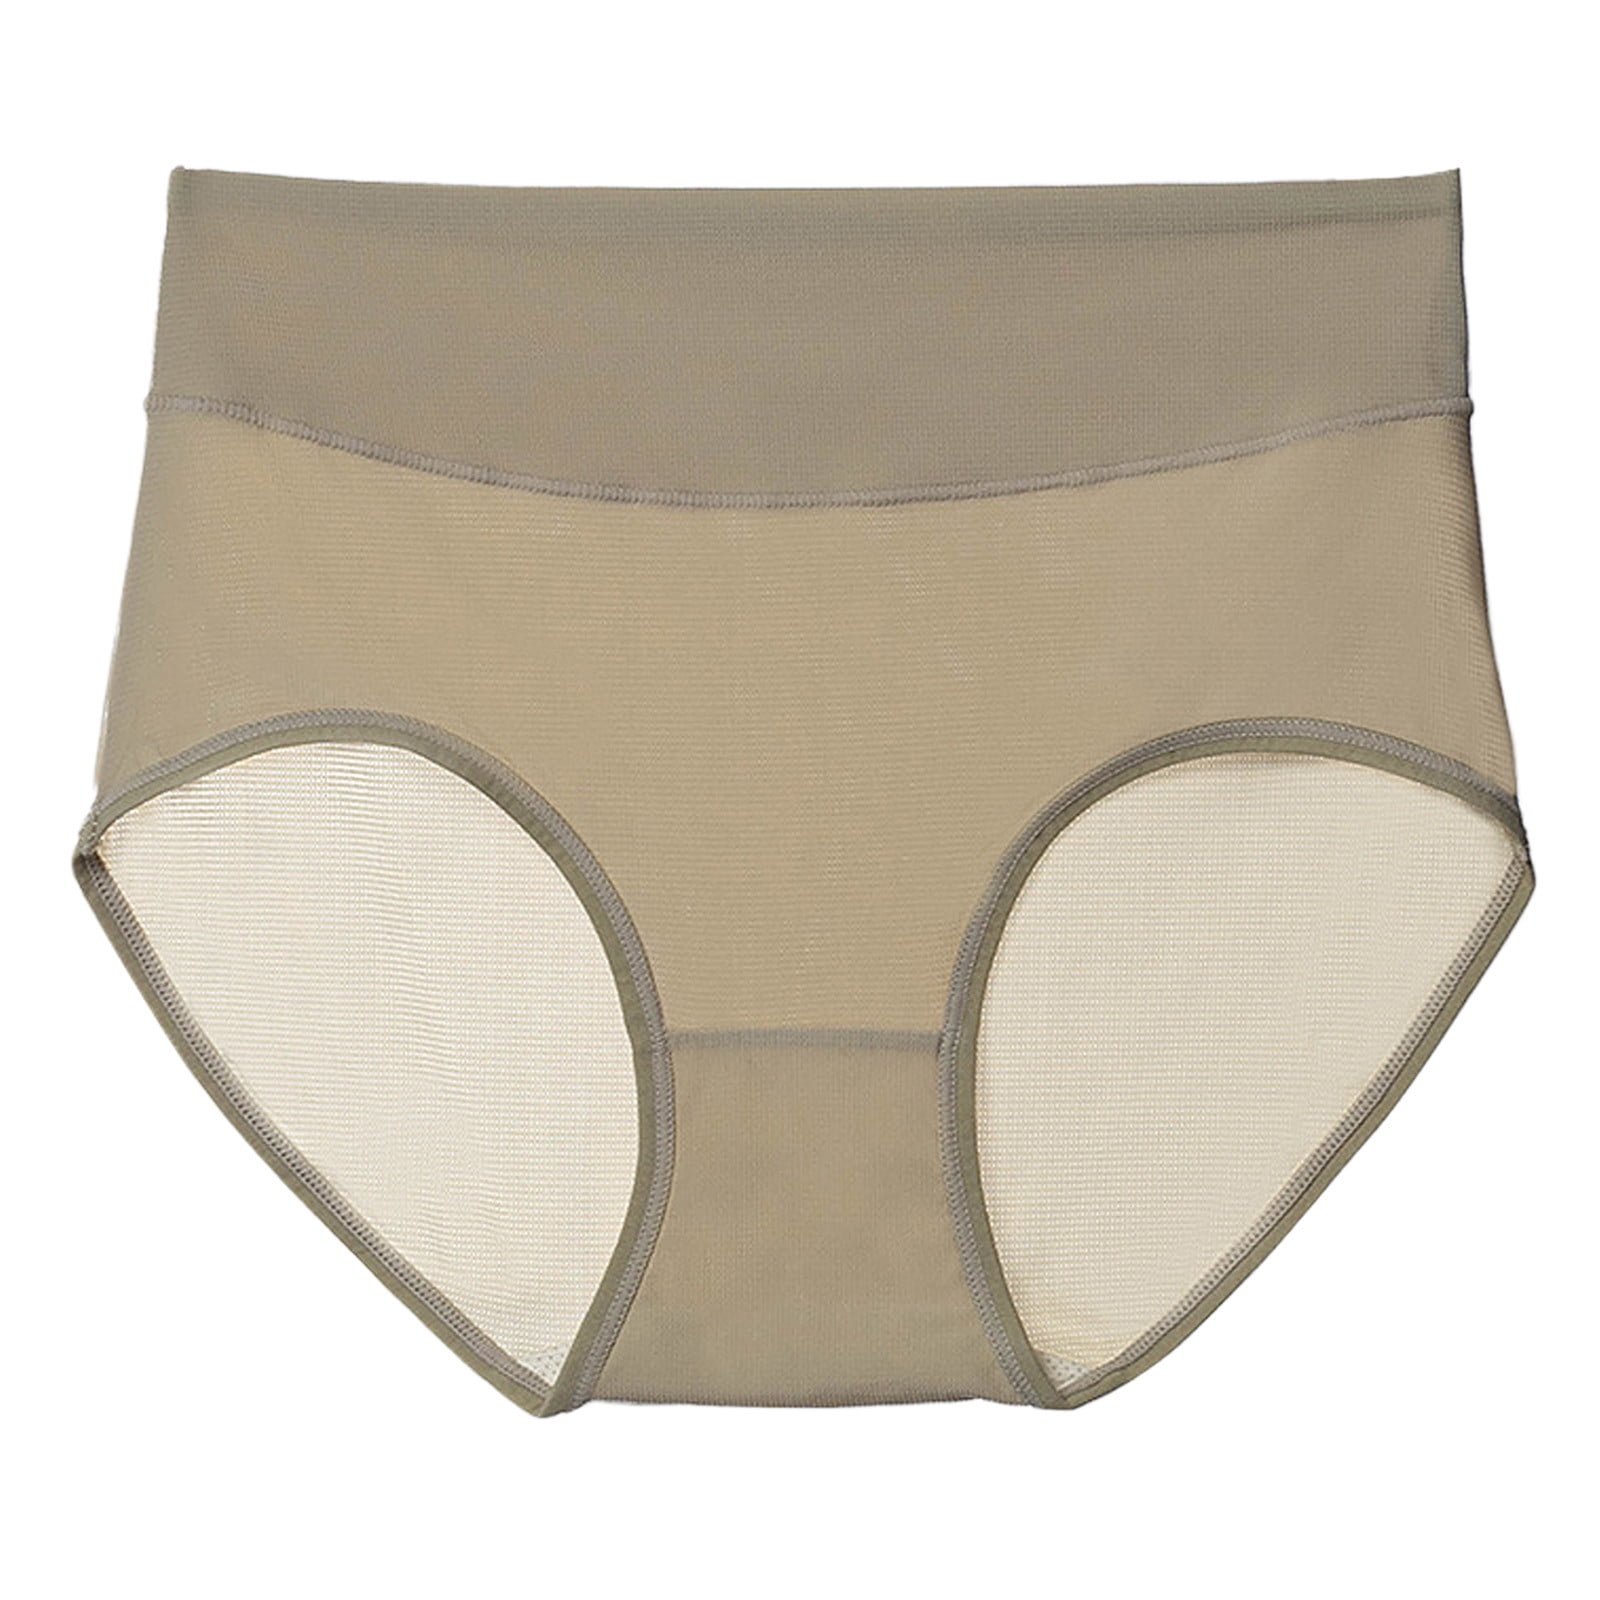 CAICJ98 Seamless Underwear for Women Women's Fashion High Waist Underwear  Solid Color Briefs Underwear Women Panties C,XXL 